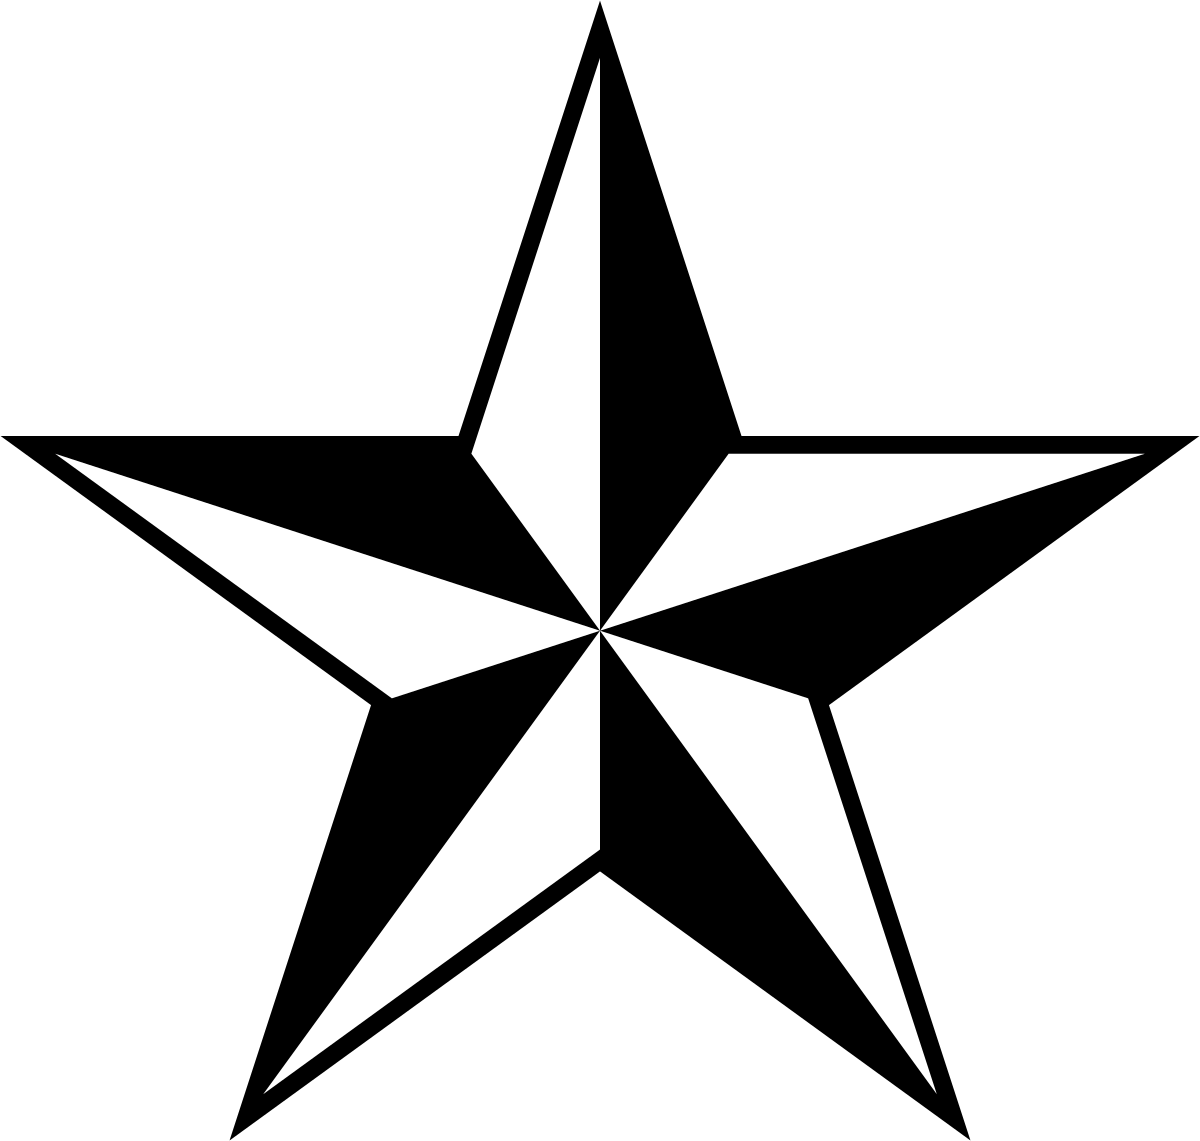 Navigation star tattoo